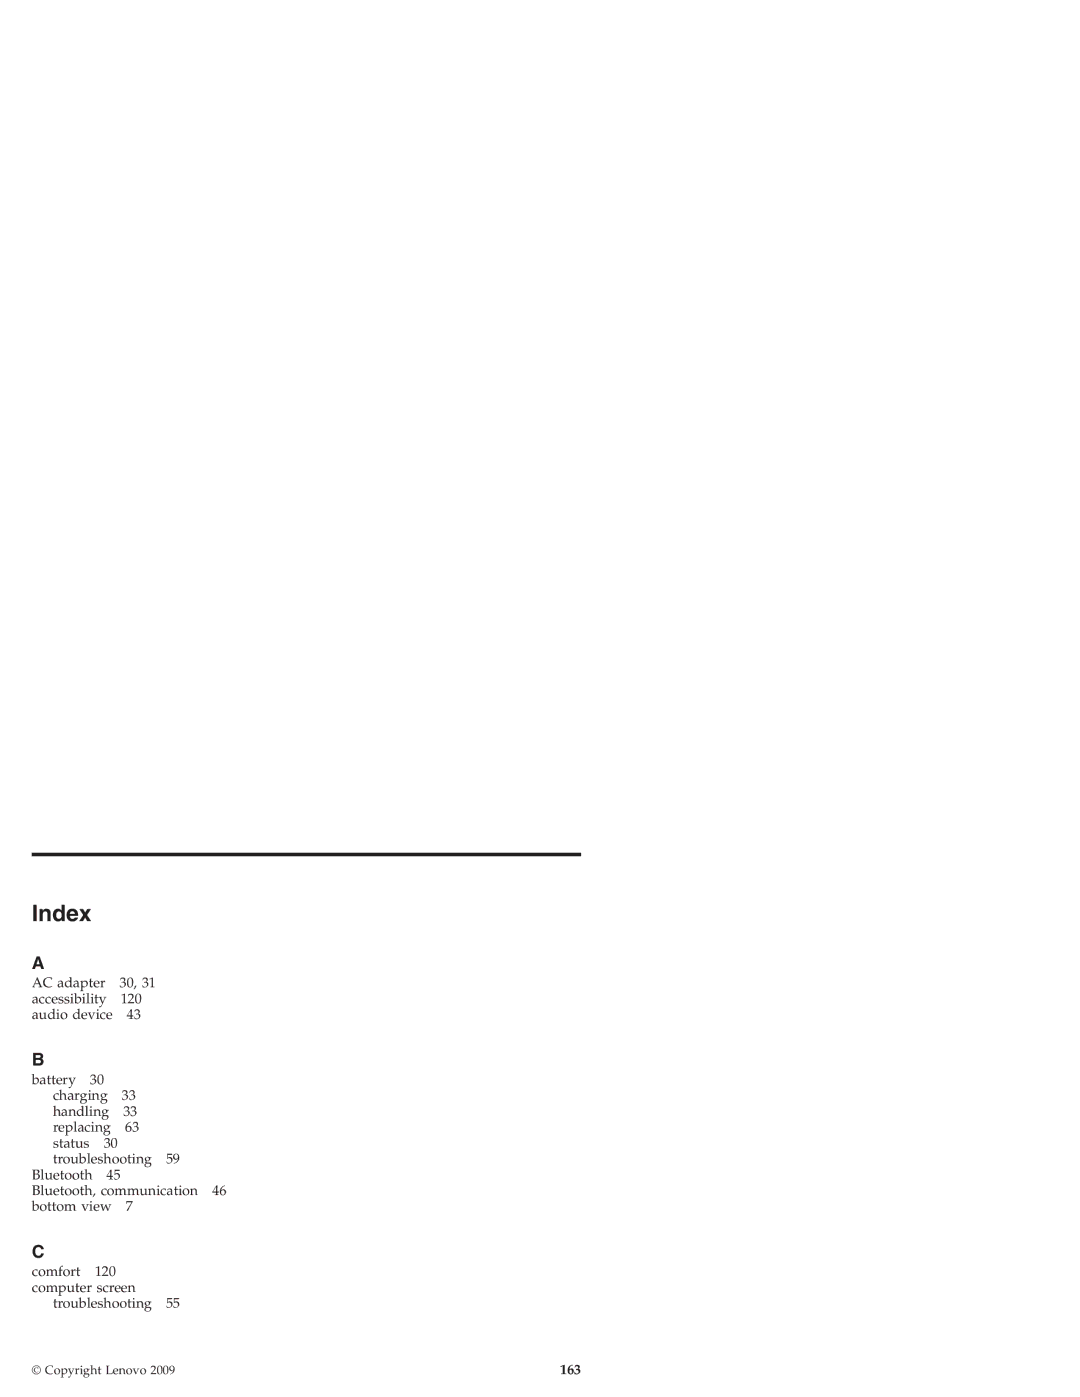 Lenovo S10 manual Index, 163 